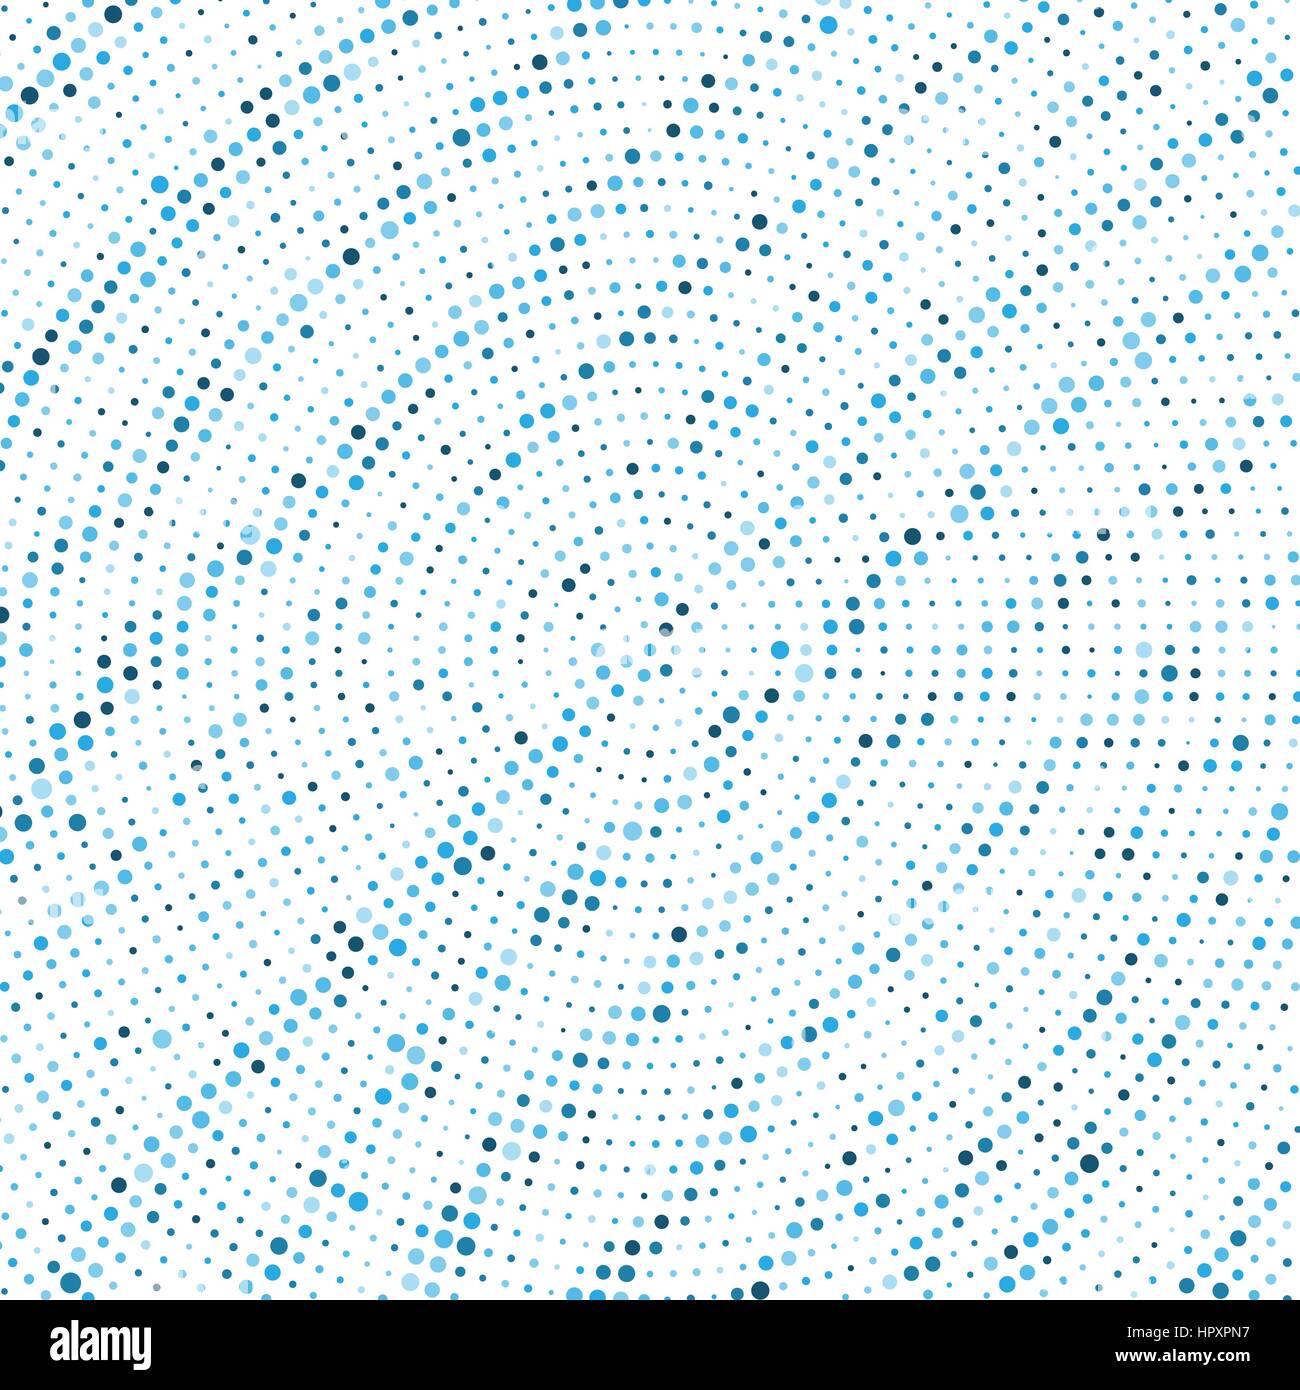 Abstract round halftone pattern puntiforme come sfondo. Grunge i punti dei mezzitoni texture vettoriali per il vostro design Illustrazione Vettoriale